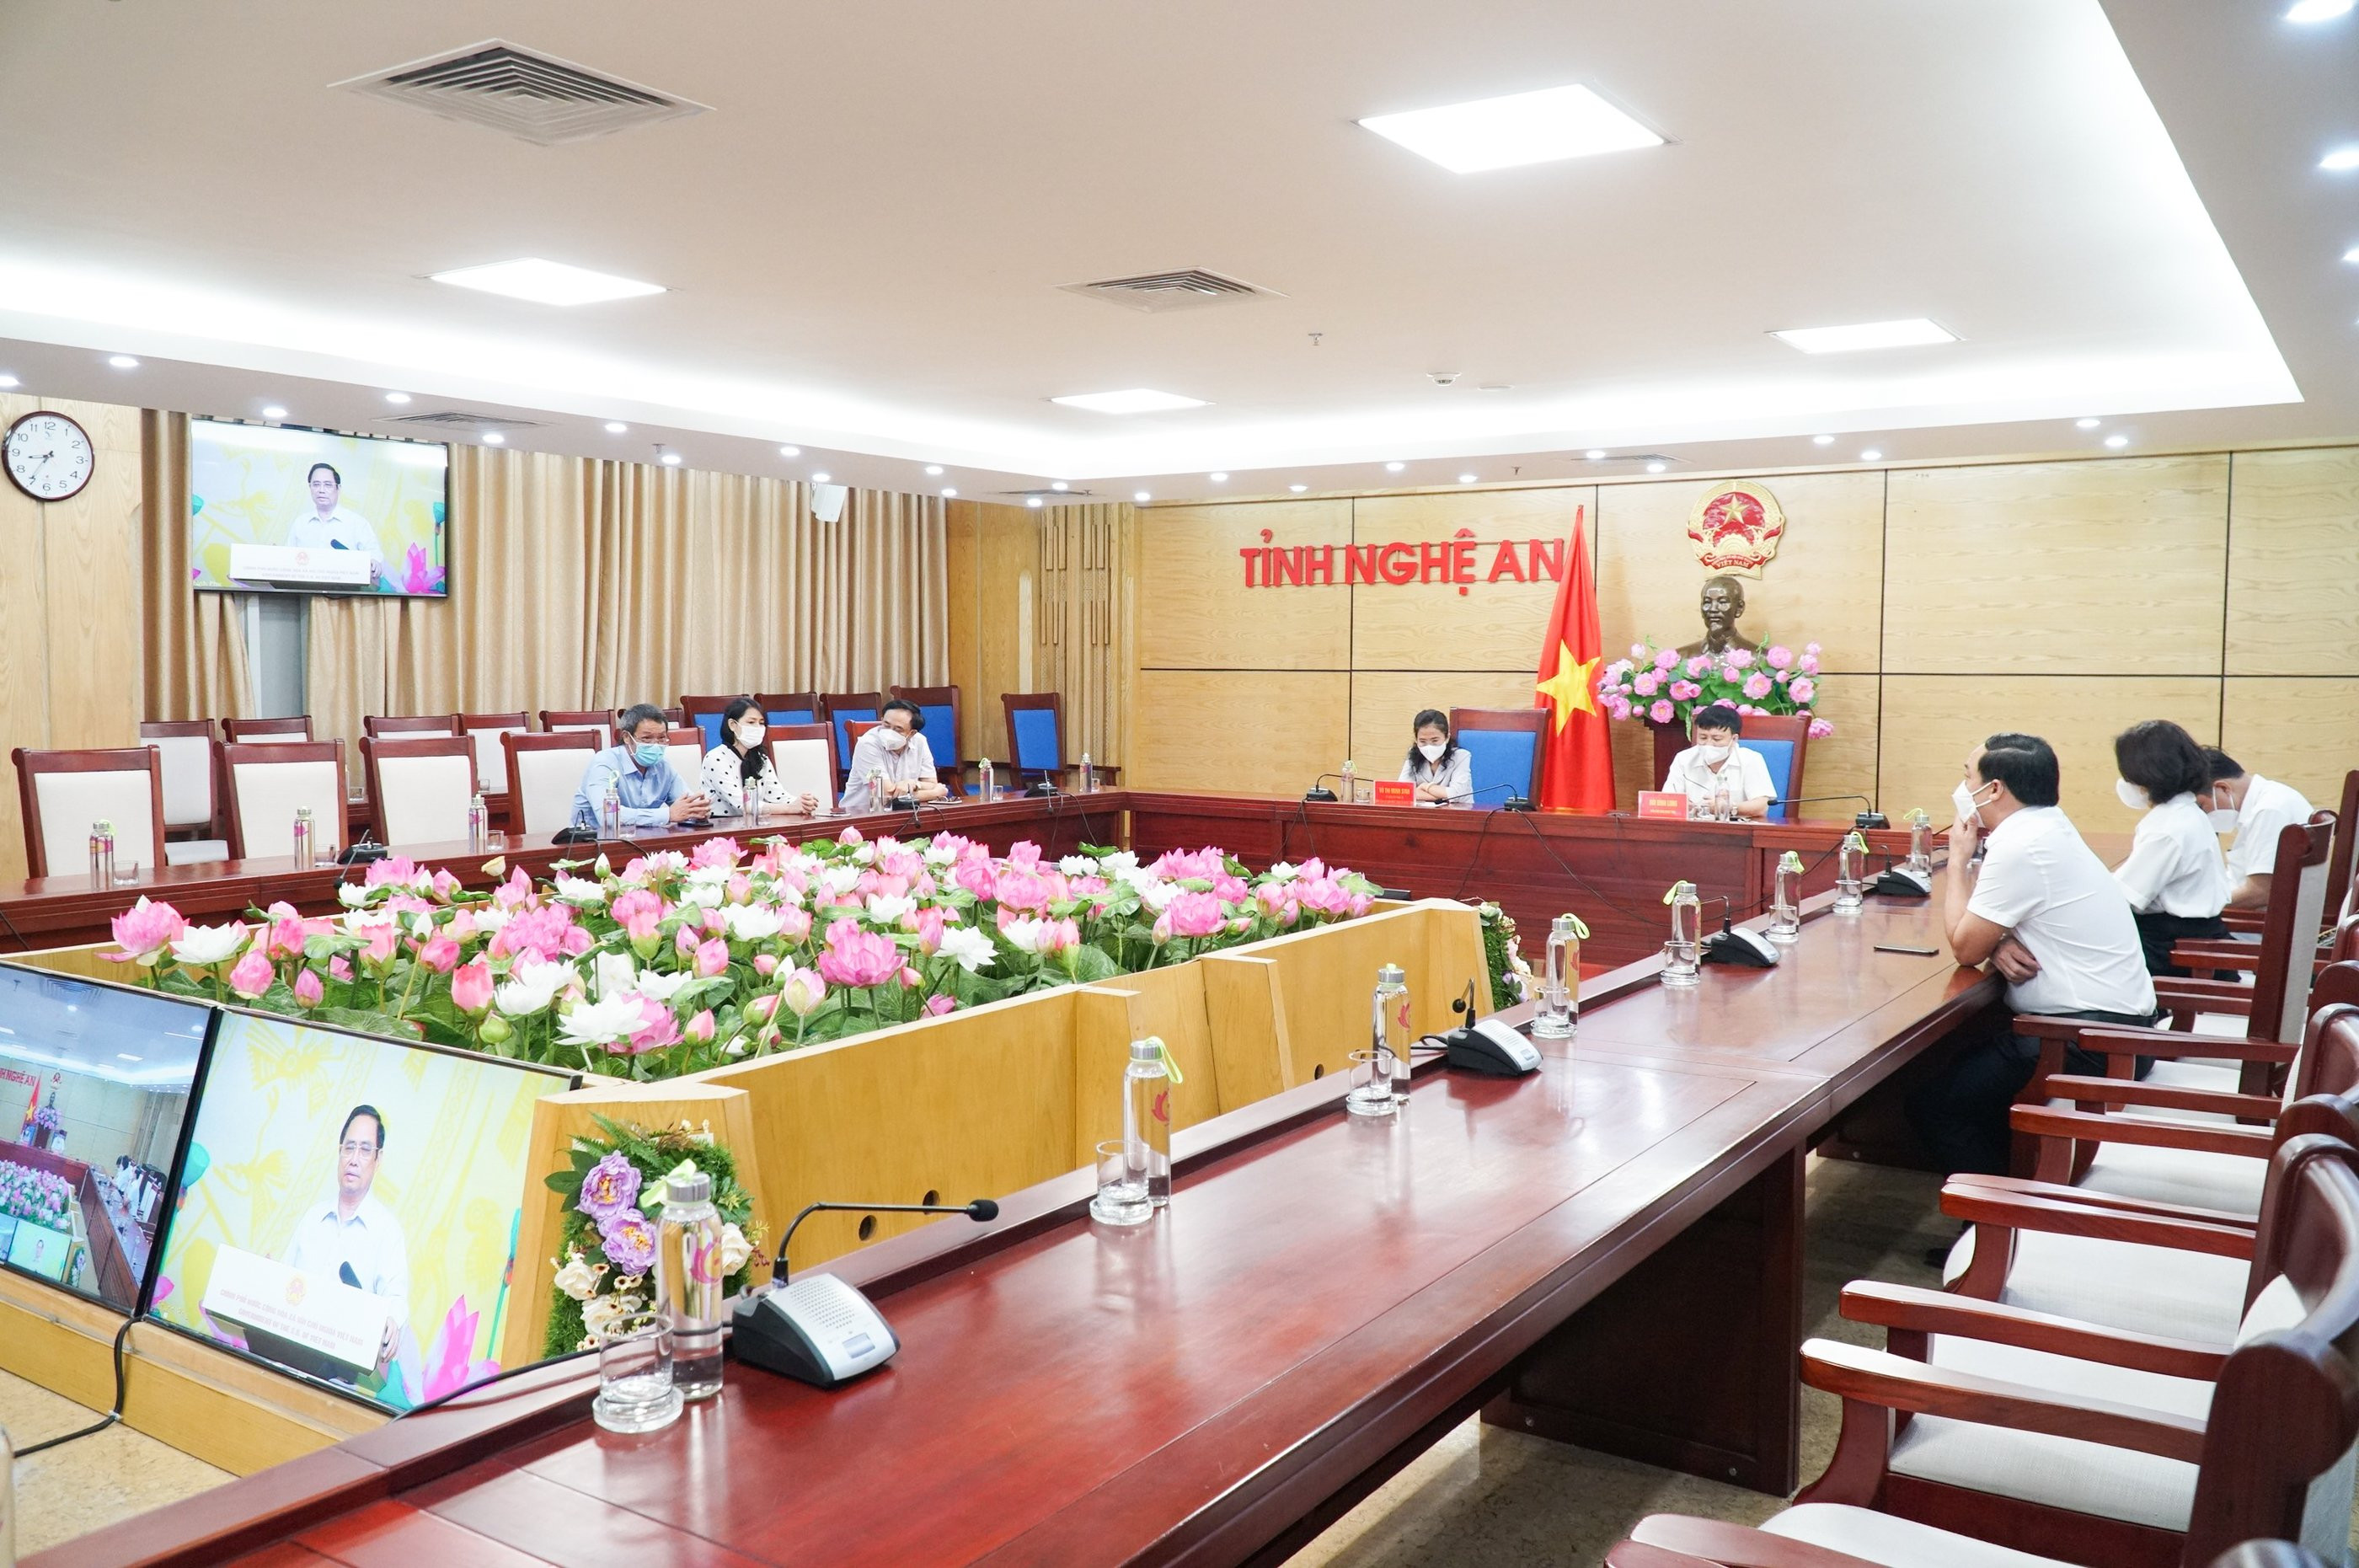 Các đại biểu nghe phát biểu của Thủ tướng Chính phủ tại đầu cầu Nghệ An. Ảnh: MH